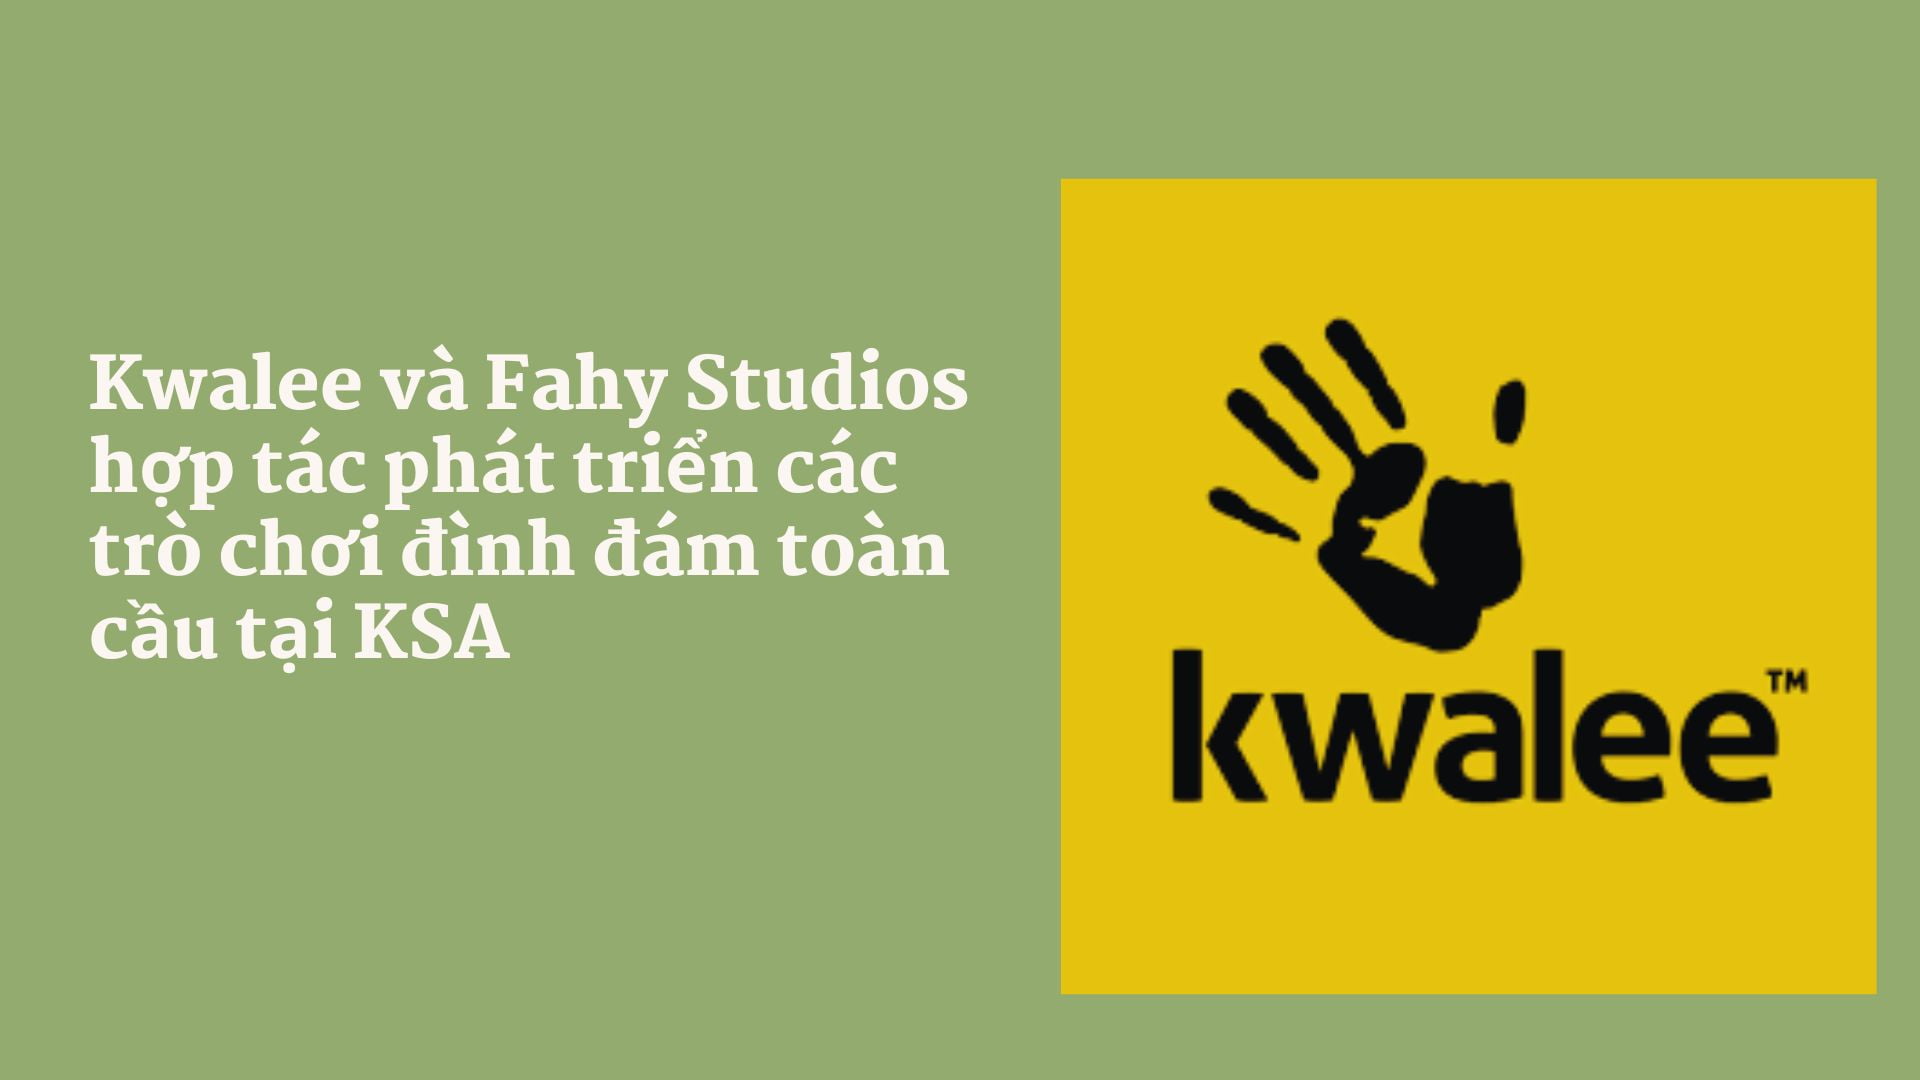 Kwalee và Fahy Studios hợp tác phát triển các trò chơi đình đám toàn cầu tại KSA